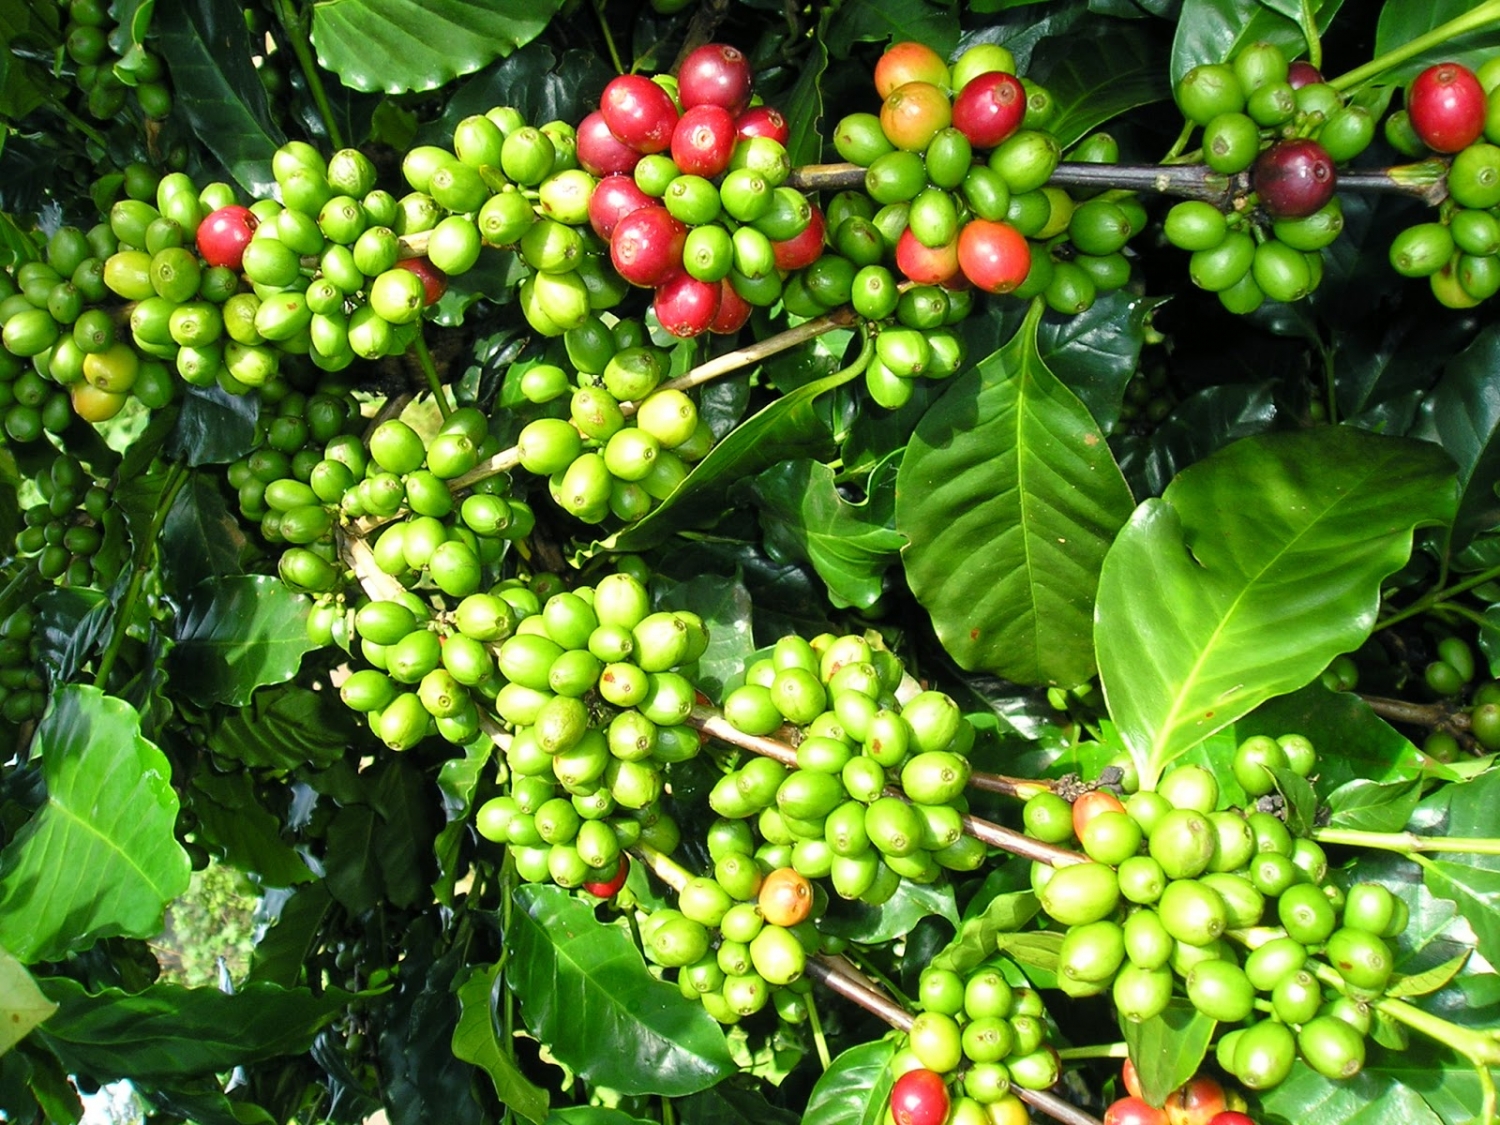 Giá cà phê hôm nay 7/7: Cà phê trong nước giảm 400 đồng/kg ở địa phương trọng điểm